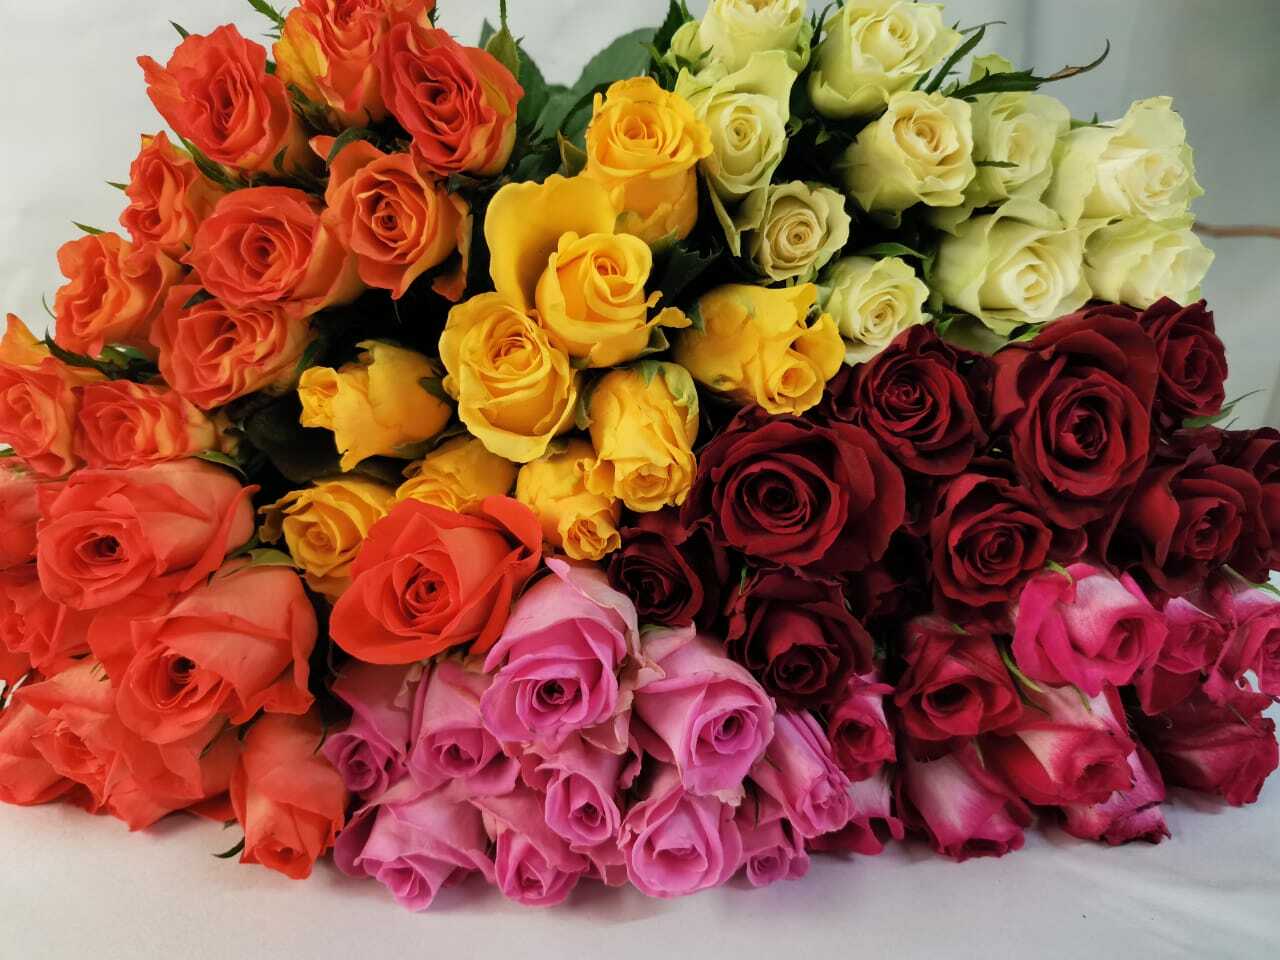 Розы премиум- и суперпремиум сегмента можно встретить и в ассортименте некоторых кенийских плантаций: Red Lands, Subati, AAA Roses, Bemak, Porini Flowers.